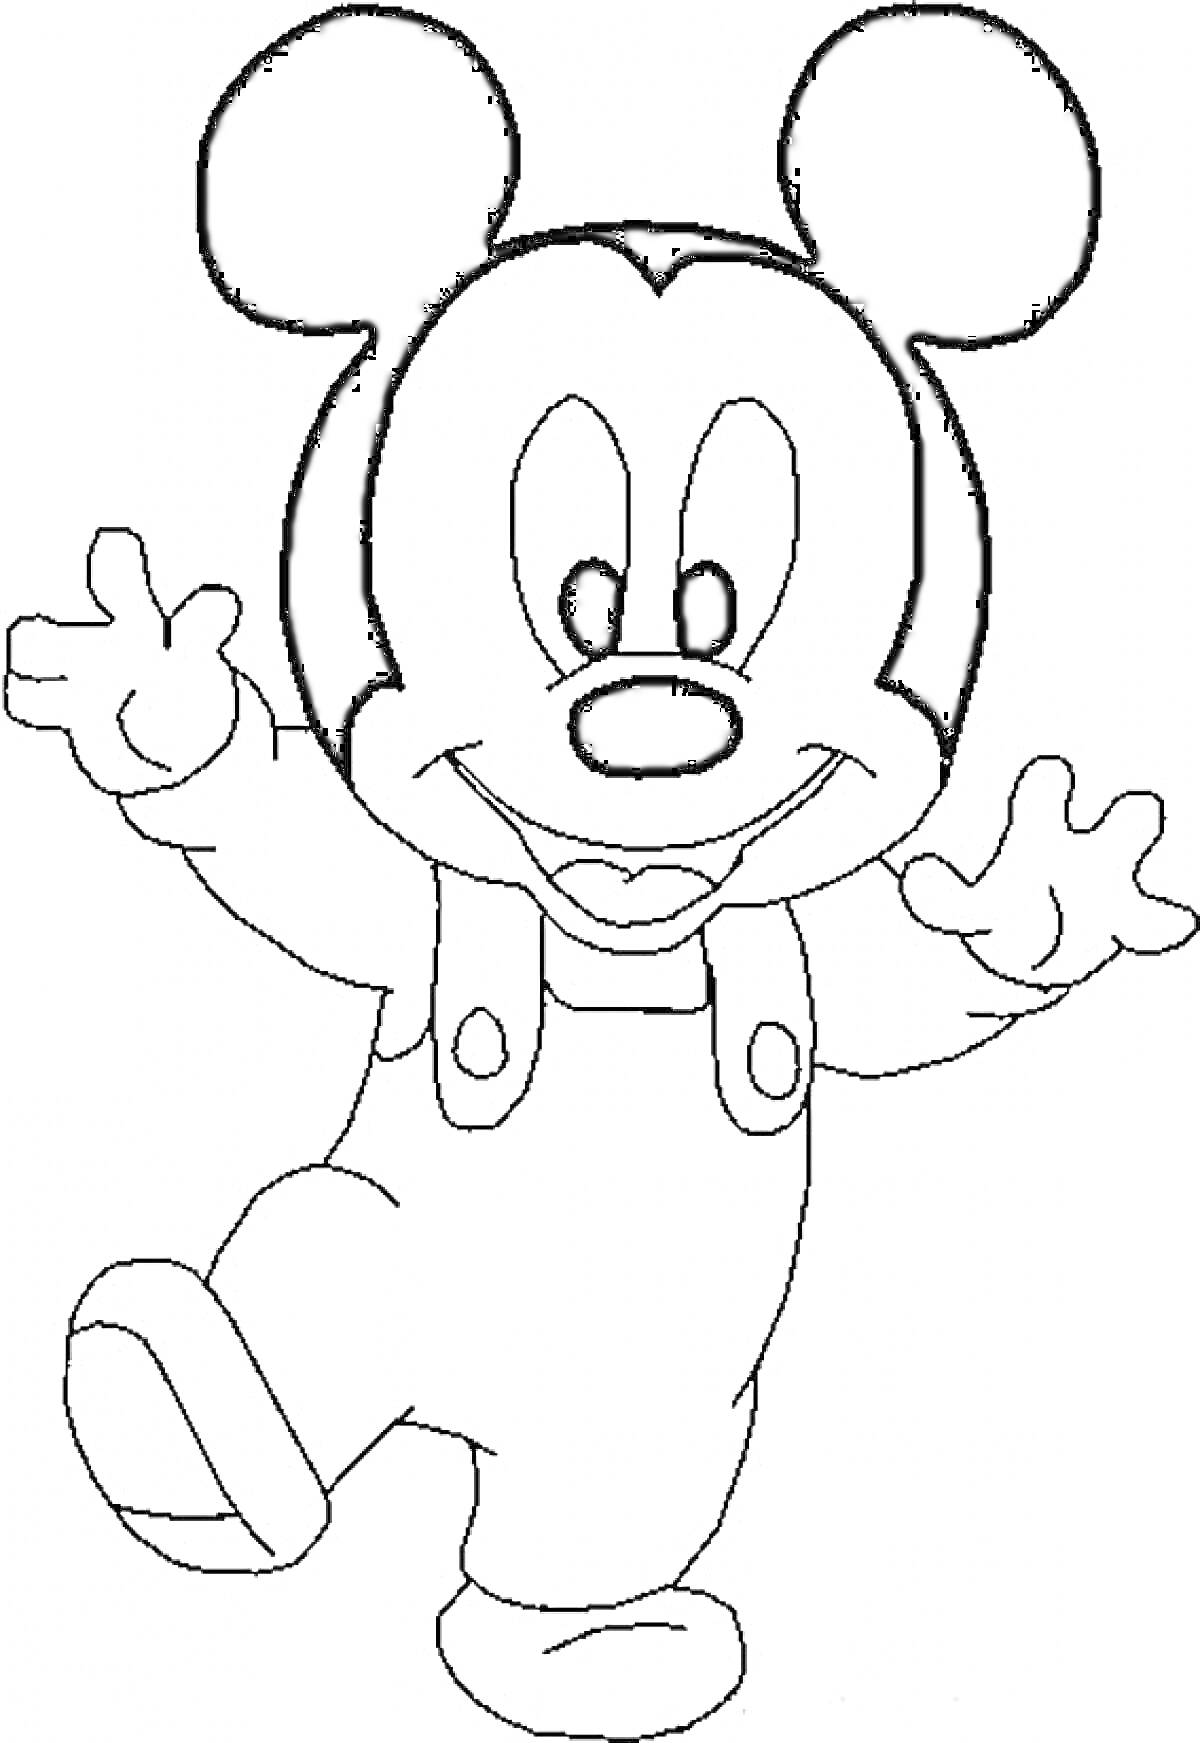 Раскраска Микки Маус в комбинезоне, машет руками и стоит на одной ноге